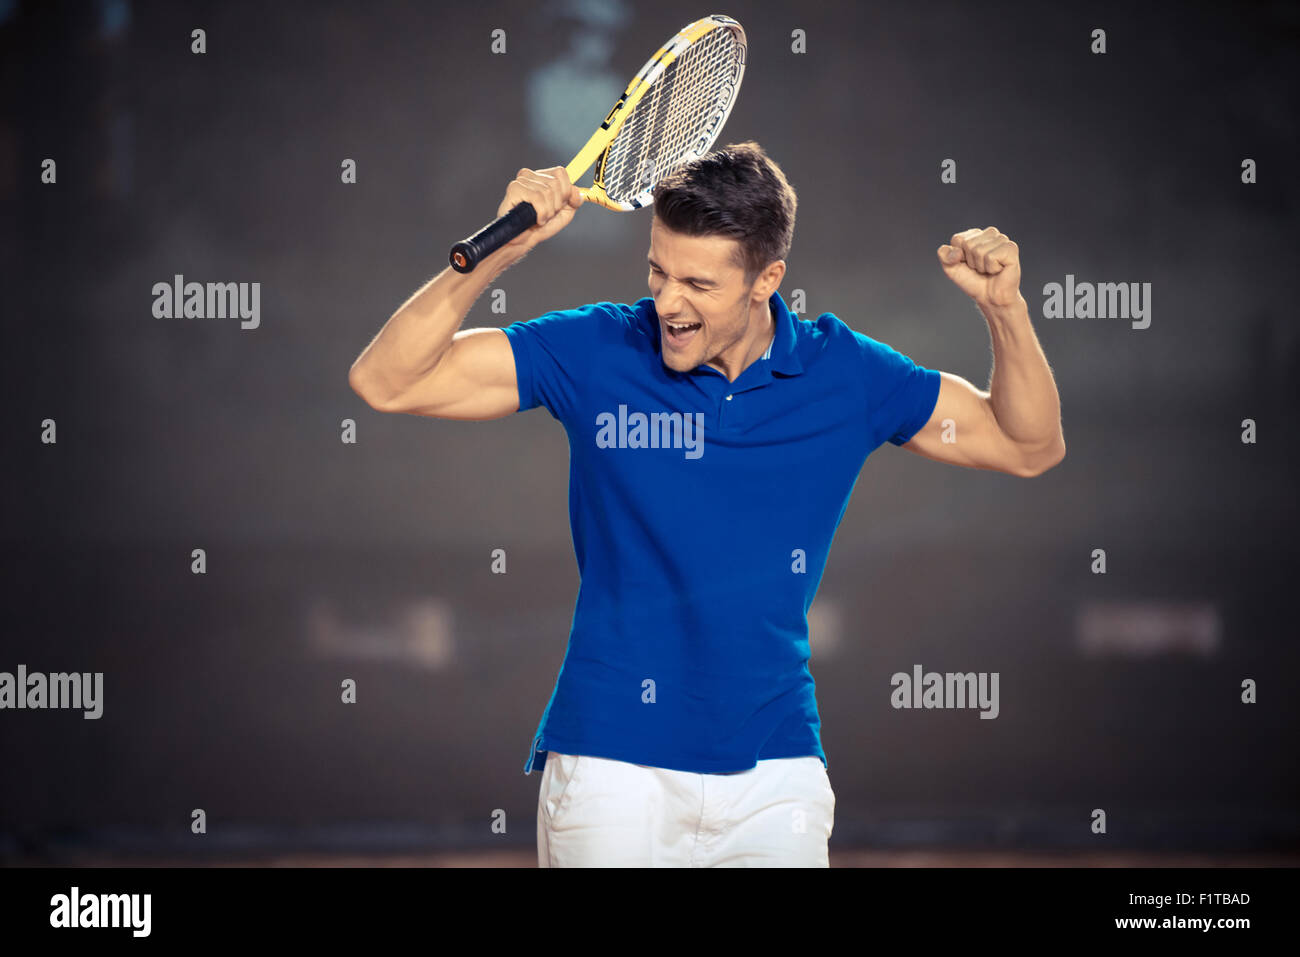 Portrait d'un joueur de tennis masculin célébrer sa victoire Banque D'Images